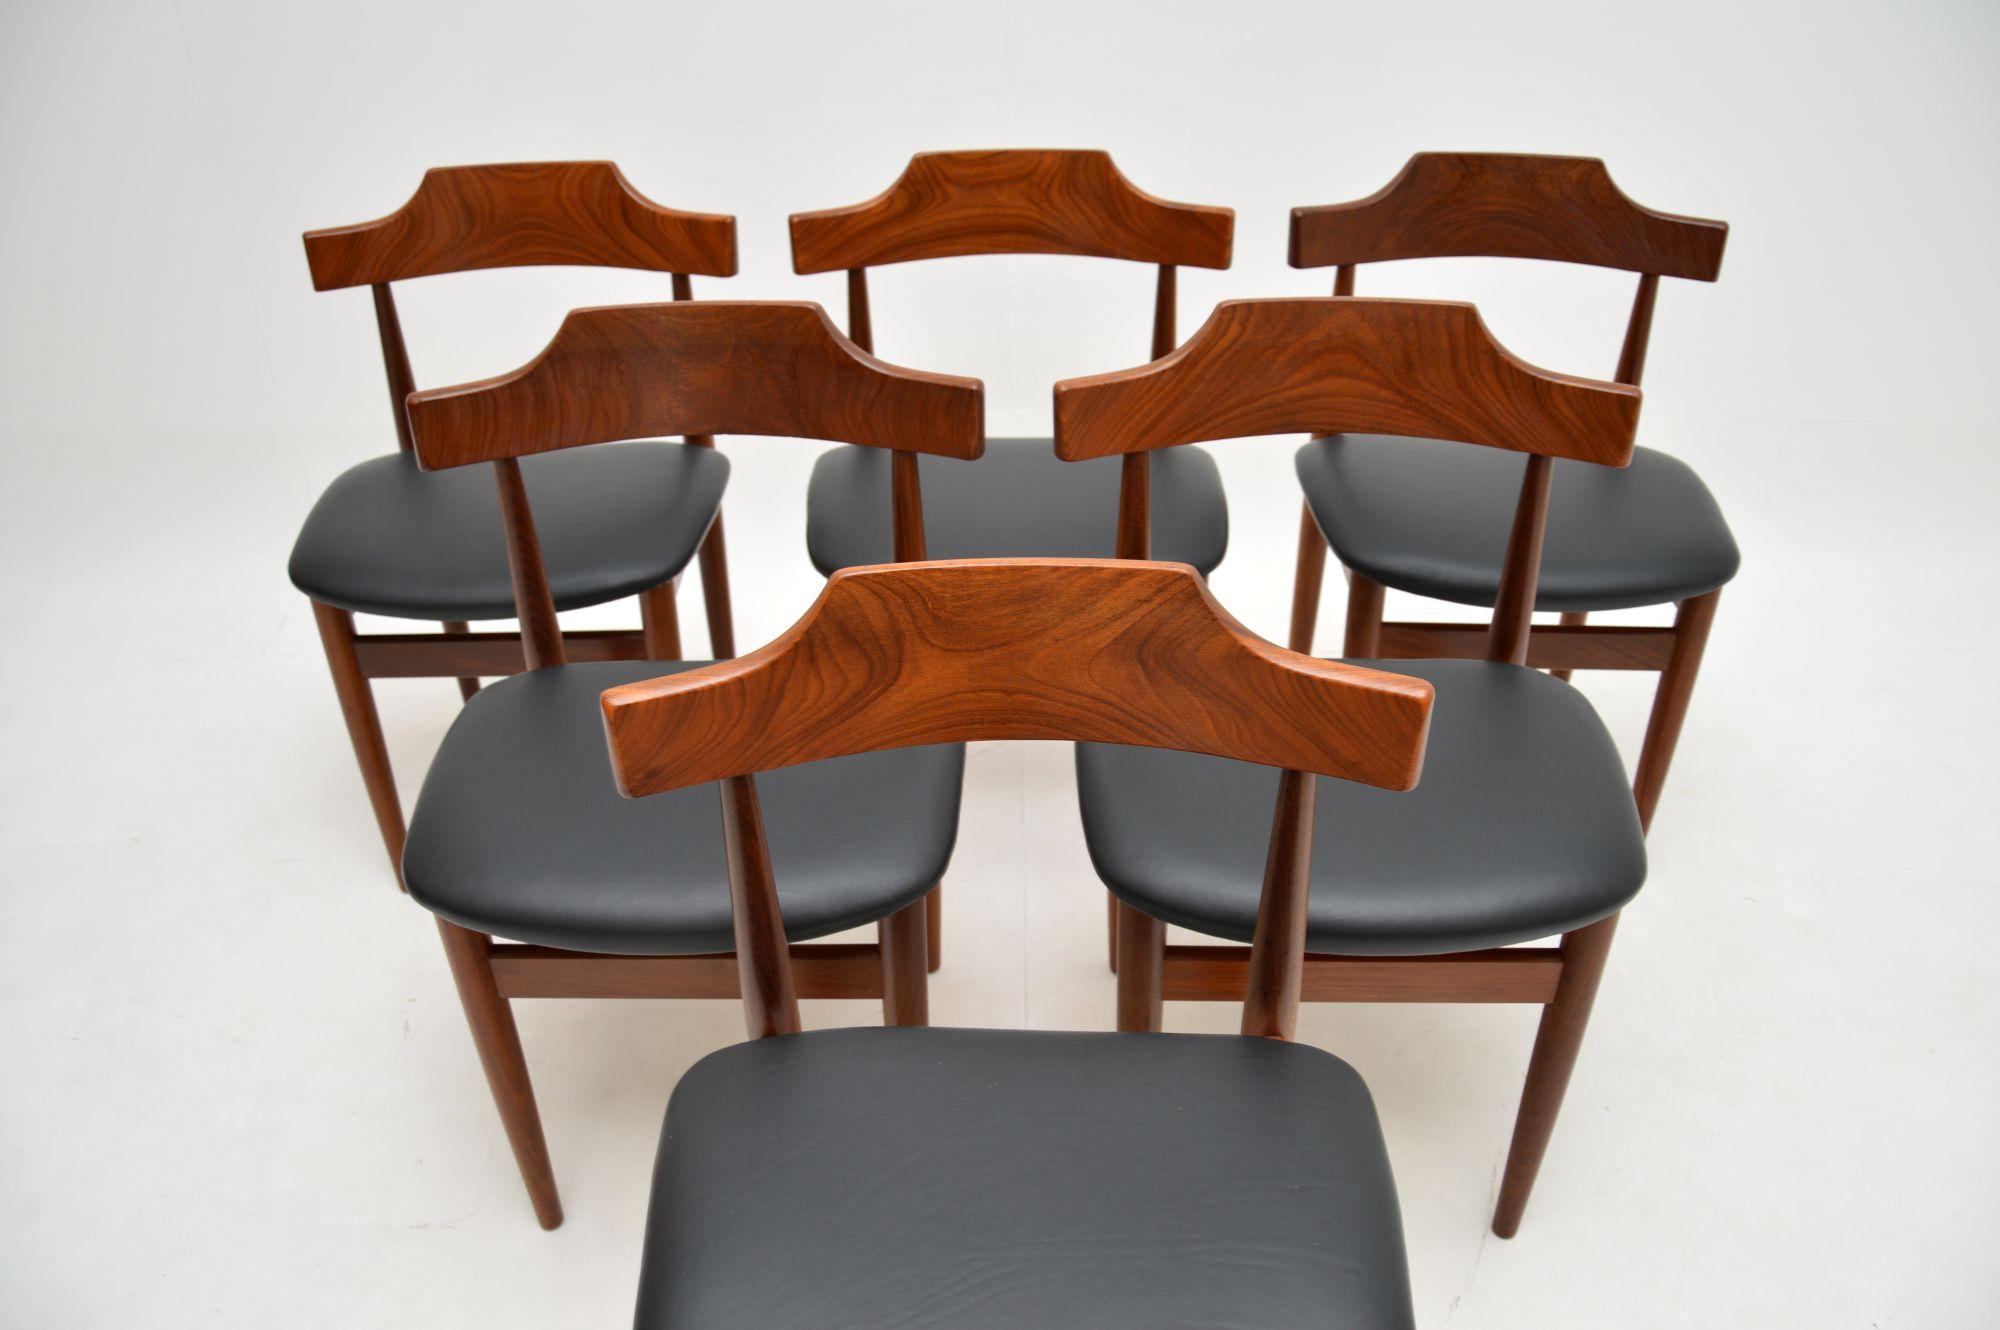 Un superbe ensemble de six chaises de salle à manger danoises vintage par Hans Olsen. Elles ont été fabriquées au Danemark par Frem Rojle et datent des années 1960.

La qualité est fantastique, ils sont magnifiquement fabriqués en bois massif, ils